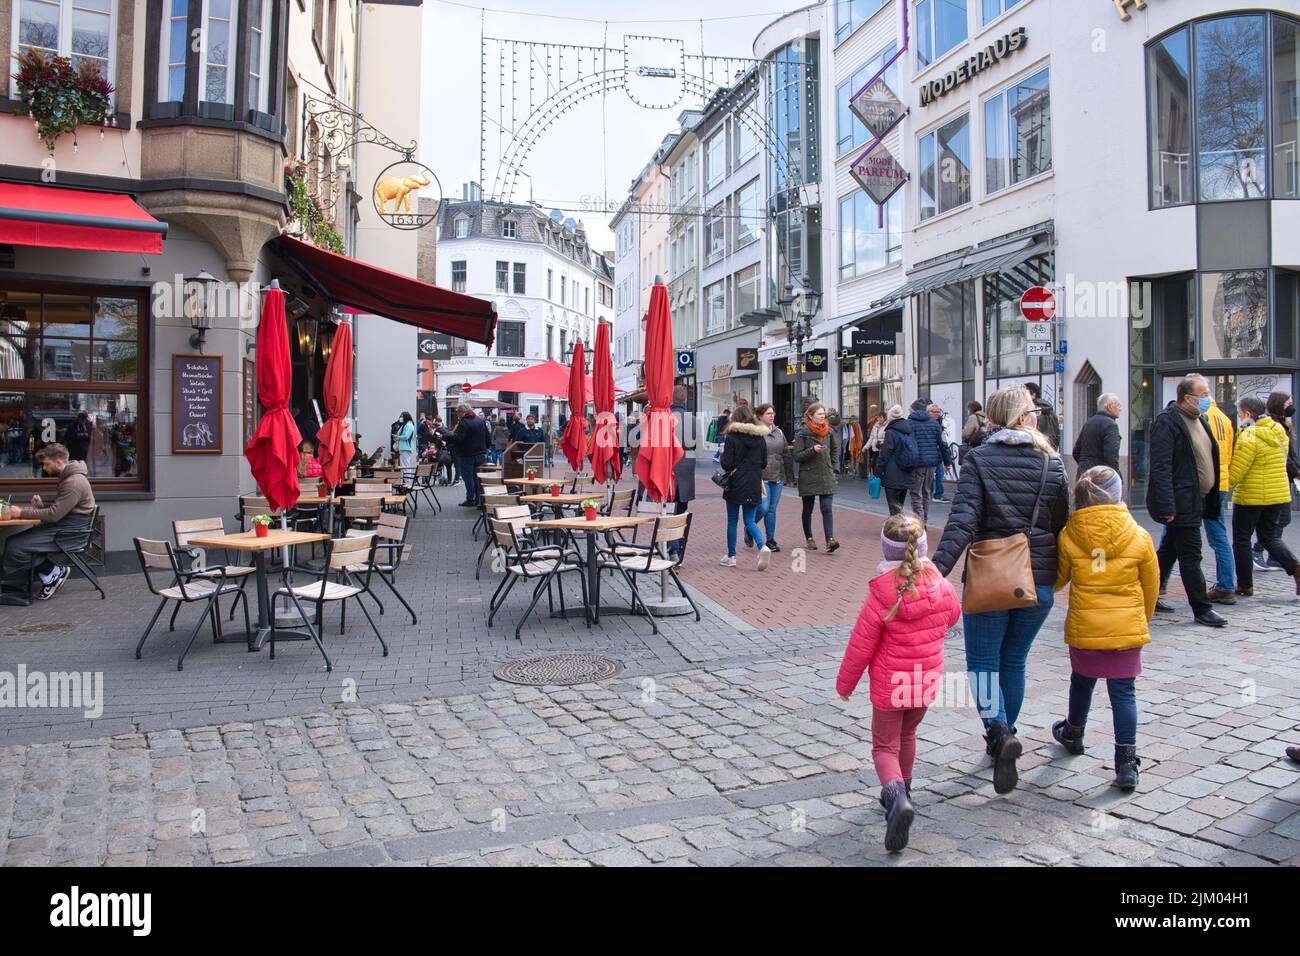 shopping street in Bonn city, lifestyle photo Stock Photo